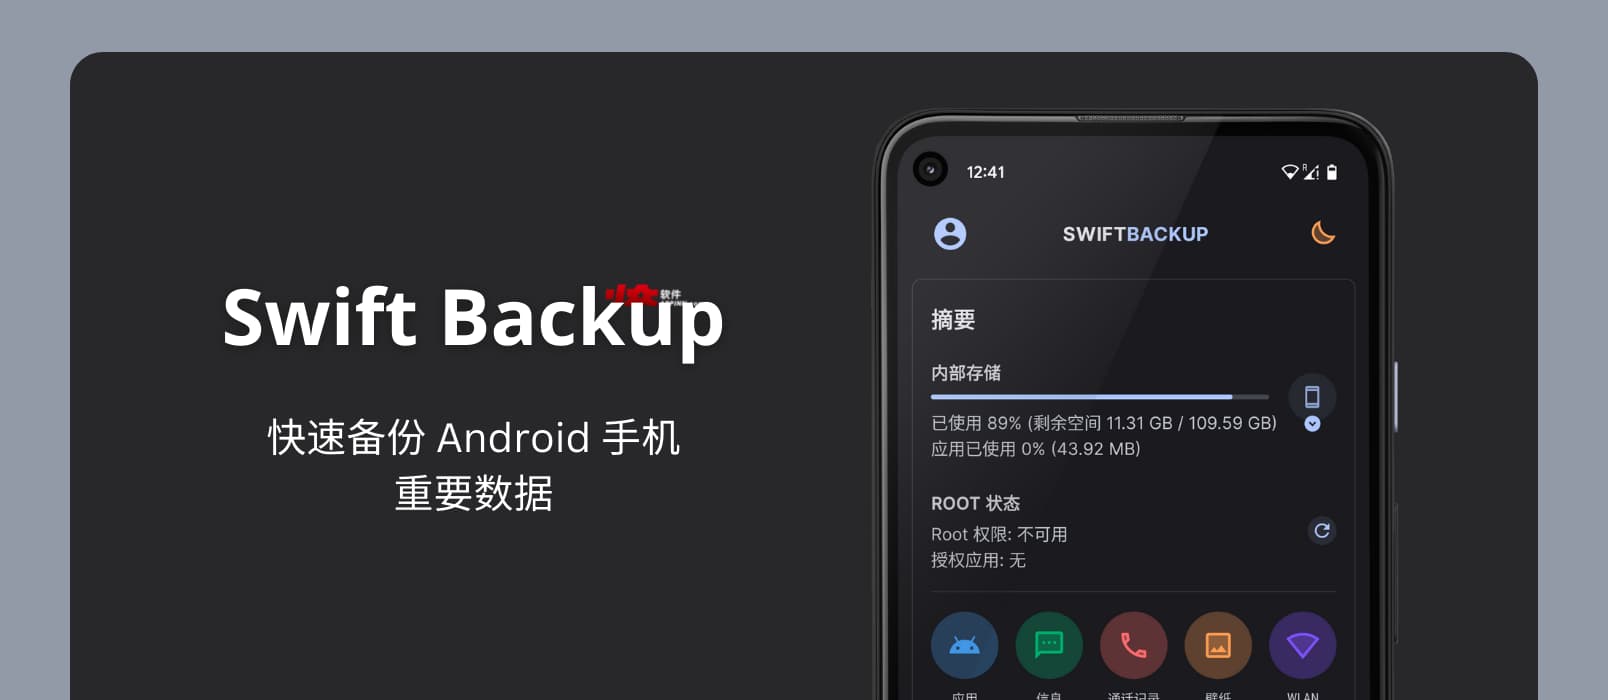 Swift Backup - 备份 Android 手机重要数据，包括短信、通信记录、壁纸、旧版应用等